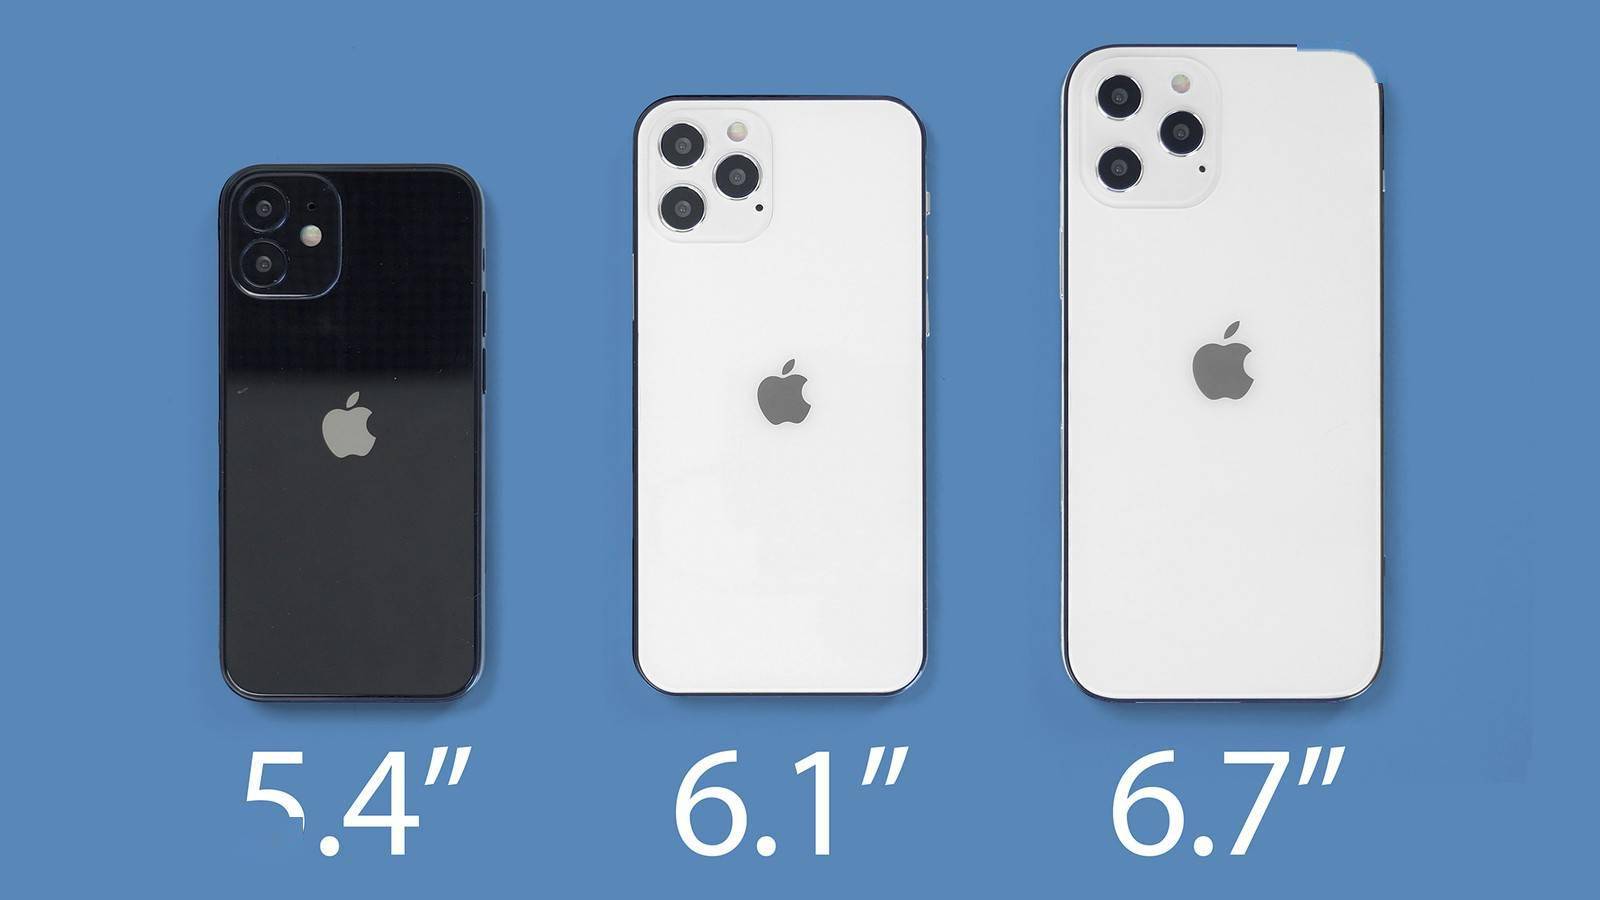 Ios 14 Beta图形素材显示5 4英寸新iphone存在 苹果